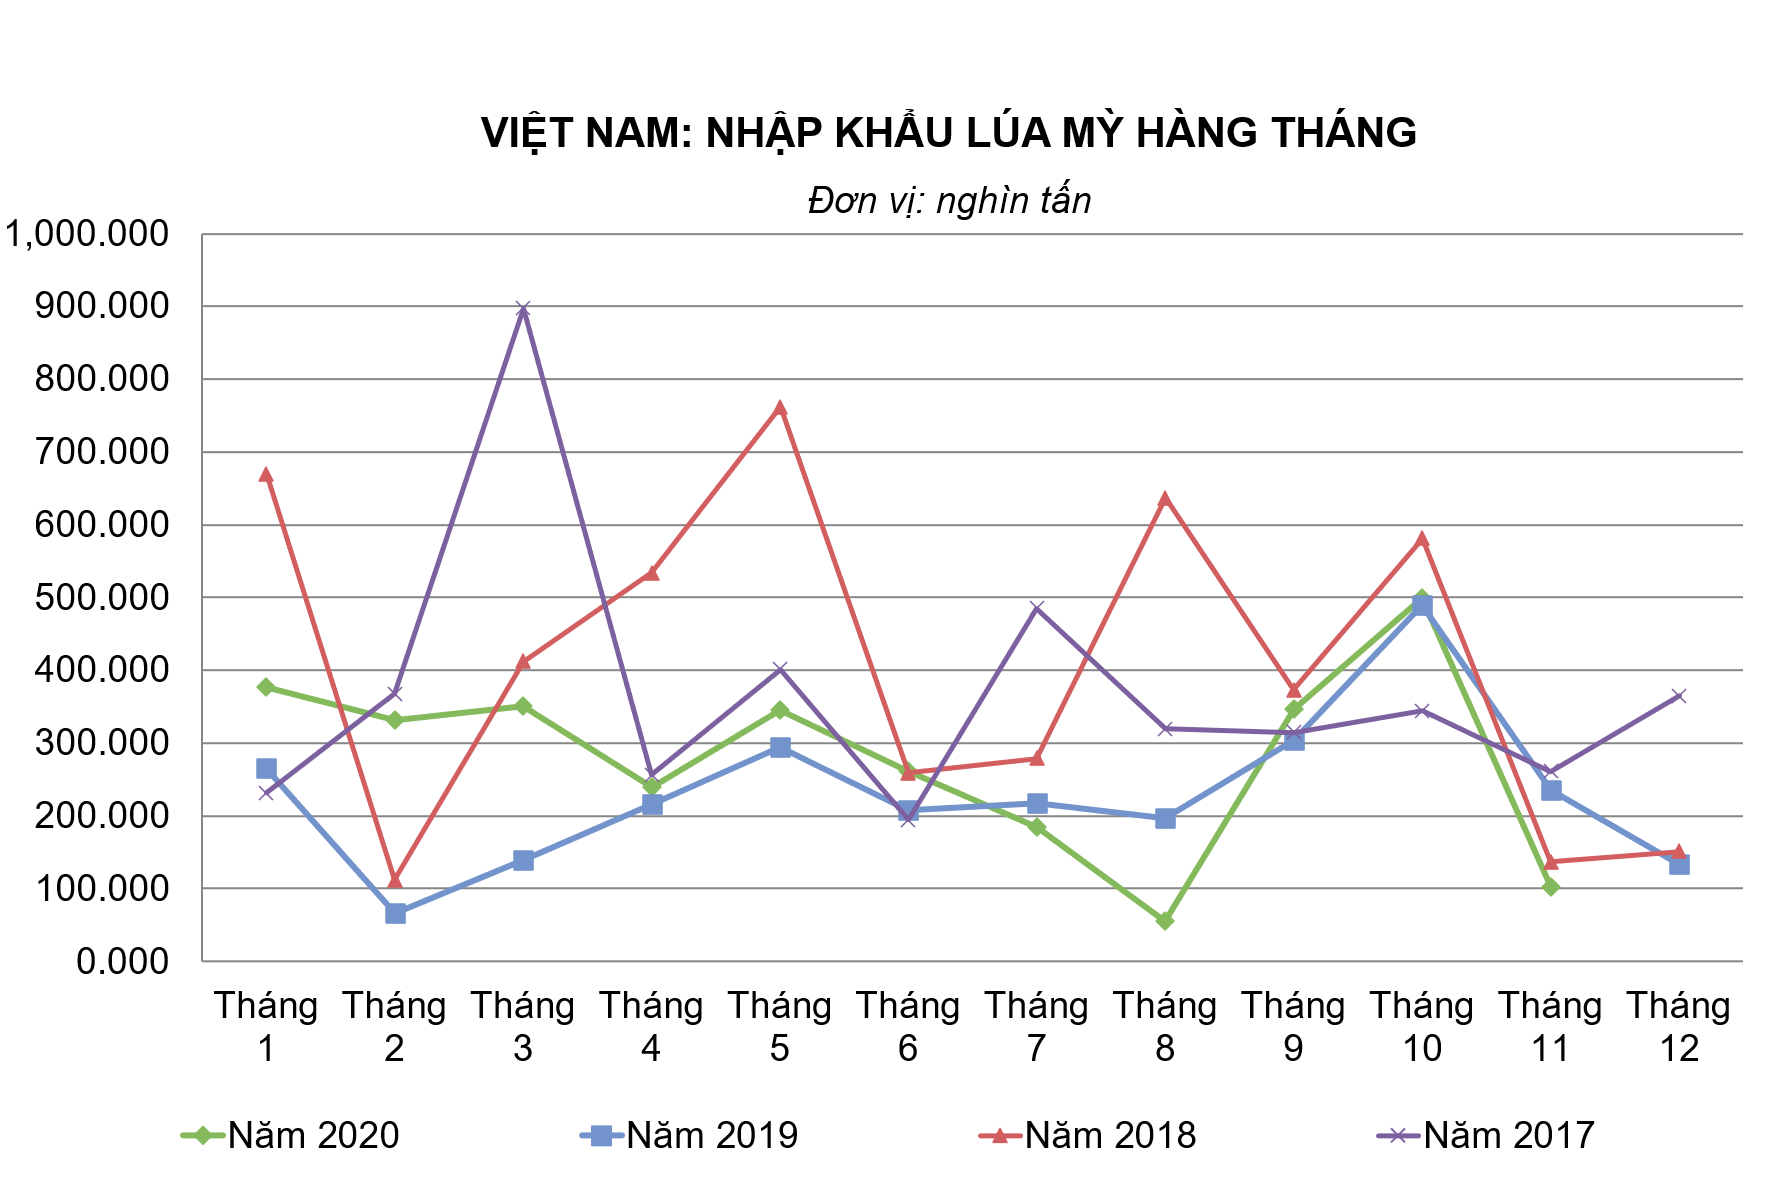 Việt Nam: Nhập khẩu lúa mỳ tháng 11 giảm rất mạnh sau 2 tháng tăng liên tiếp